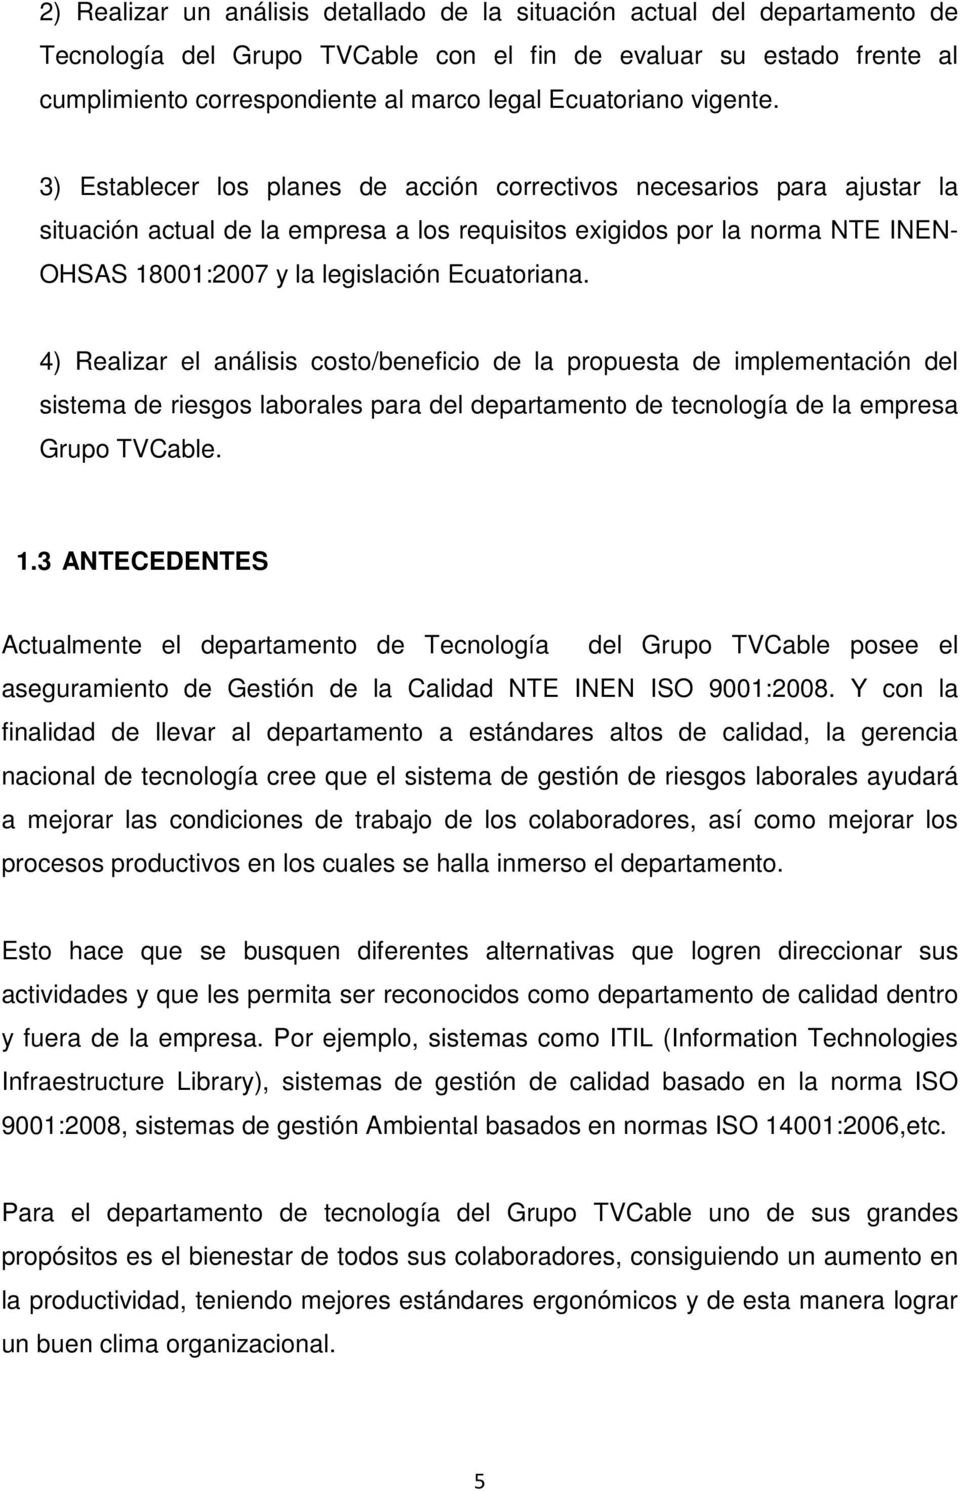 3) Establecer los planes de acción correctivos necesarios para ajustar la situación actual de la empresa a los requisitos exigidos por la norma NTE INEN- OHSAS 18001:2007 y la legislación Ecuatoriana.